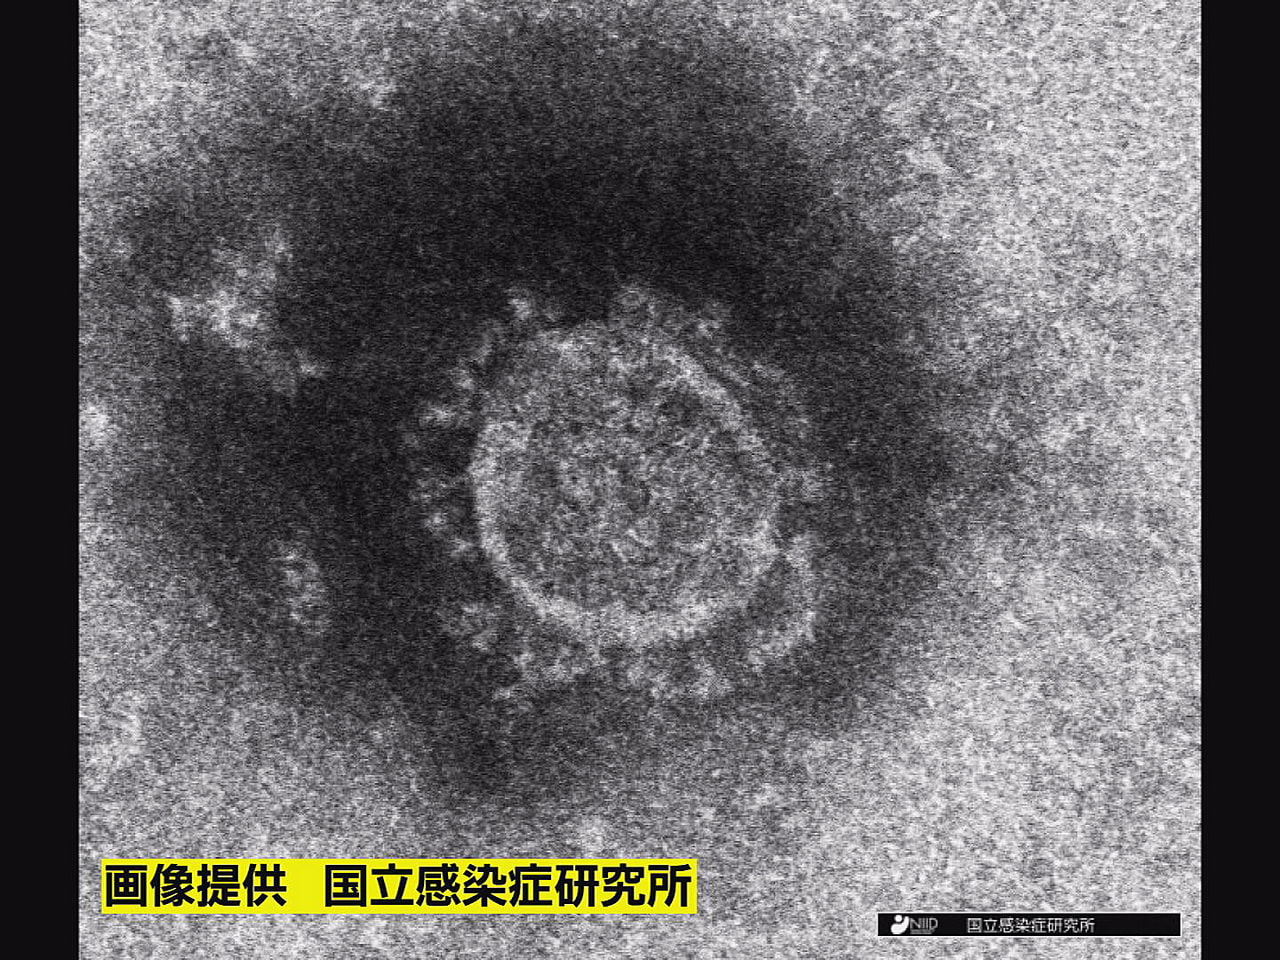 岐阜県は２４日、新型コロナウイルスの感染者が新たに４１４人確認されたと発表しまし...